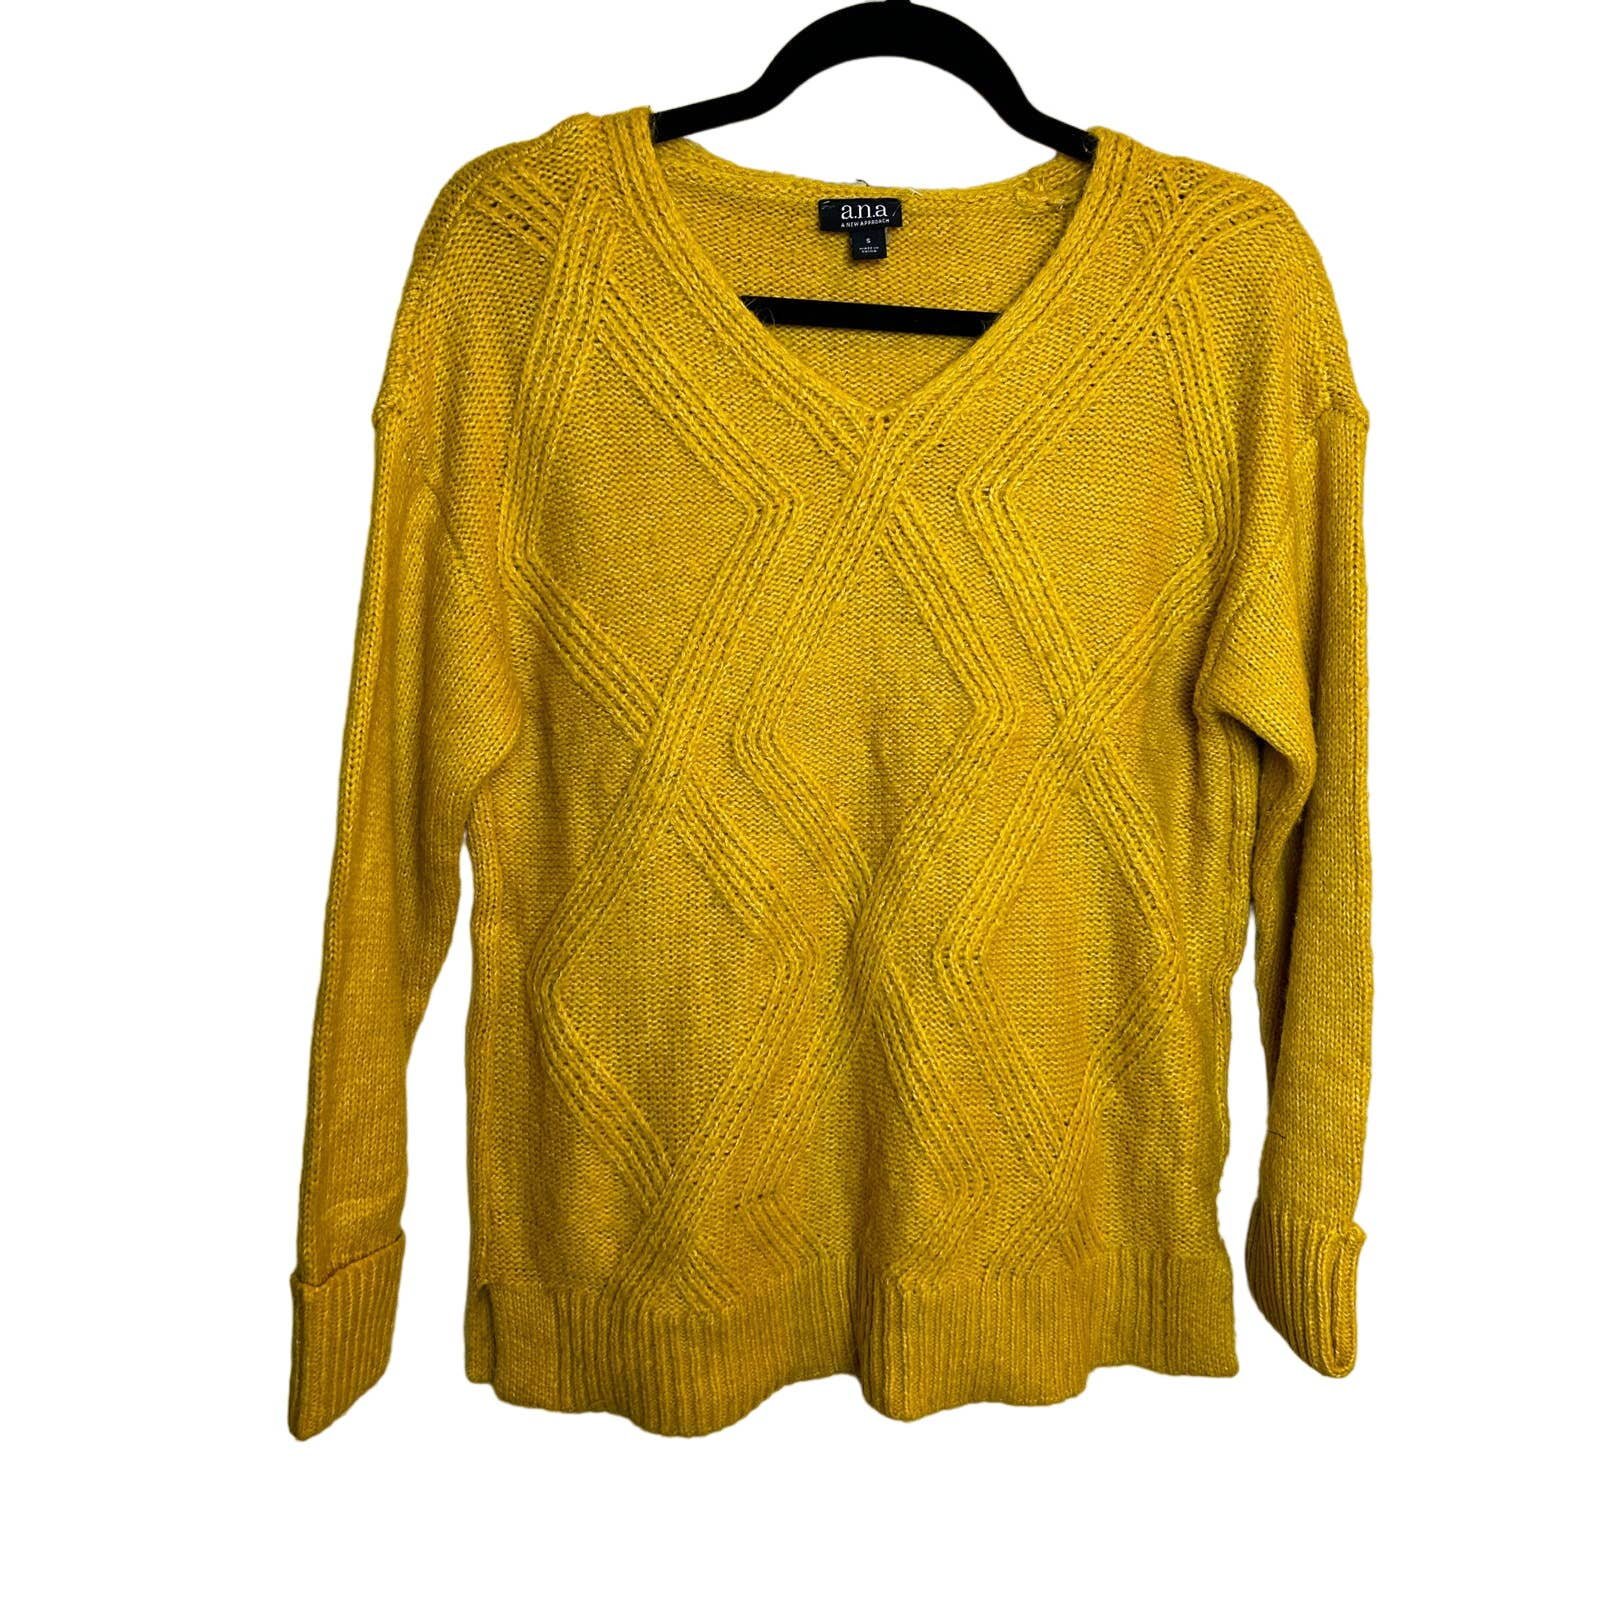 ANA Womens Yellow Mustard Sweater Size Small Knit Cottage Fall fMo3Vc2Bm